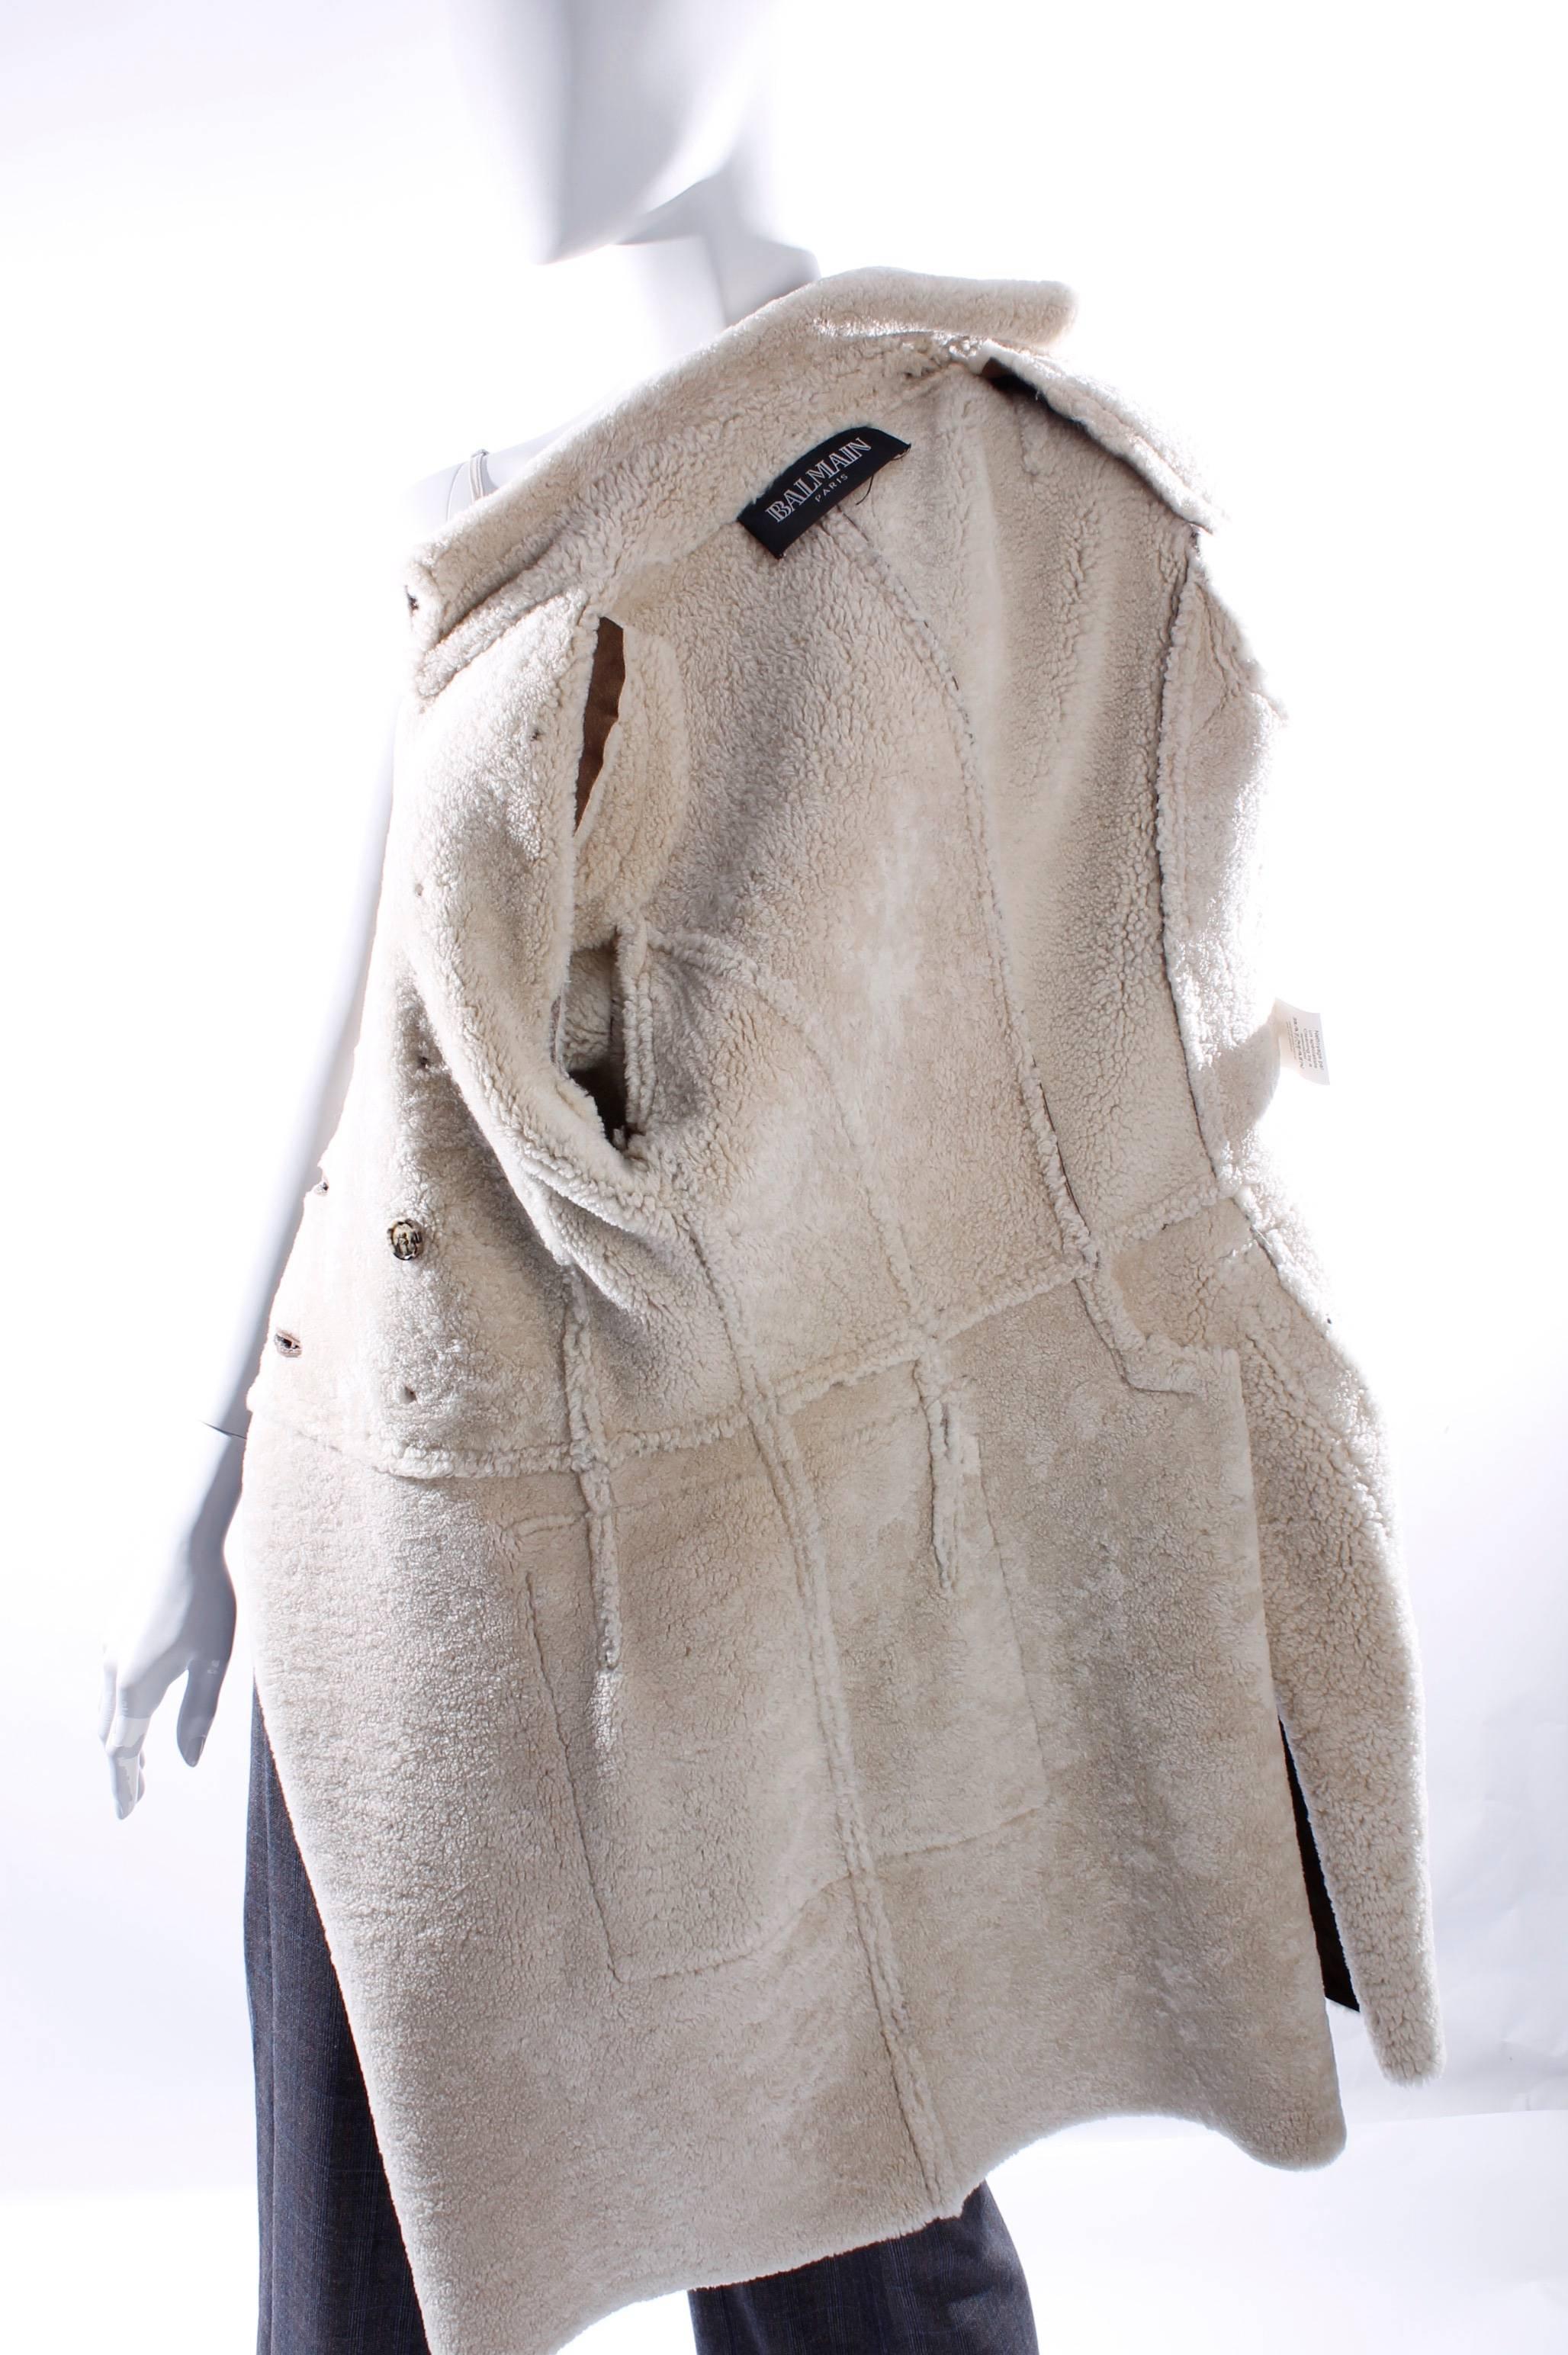 Women's or Men's Balmain Coat - dark brown lambskin leather